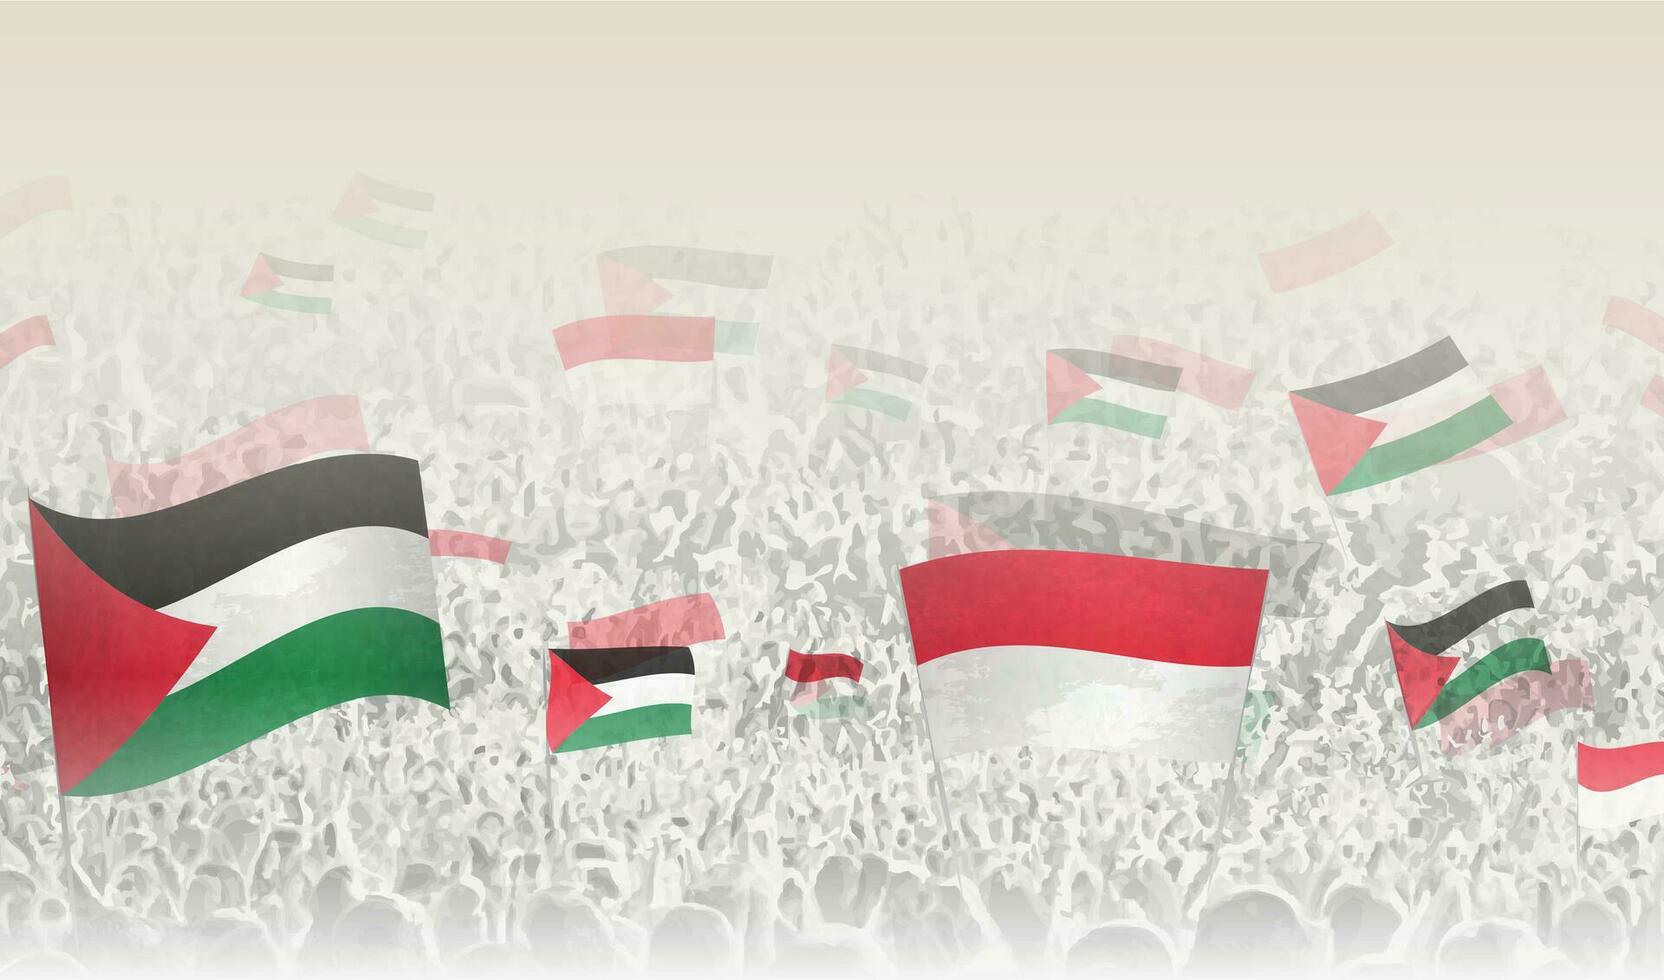 Palestine et Monaco drapeaux dans une foule de applaudissement personnes. vecteur